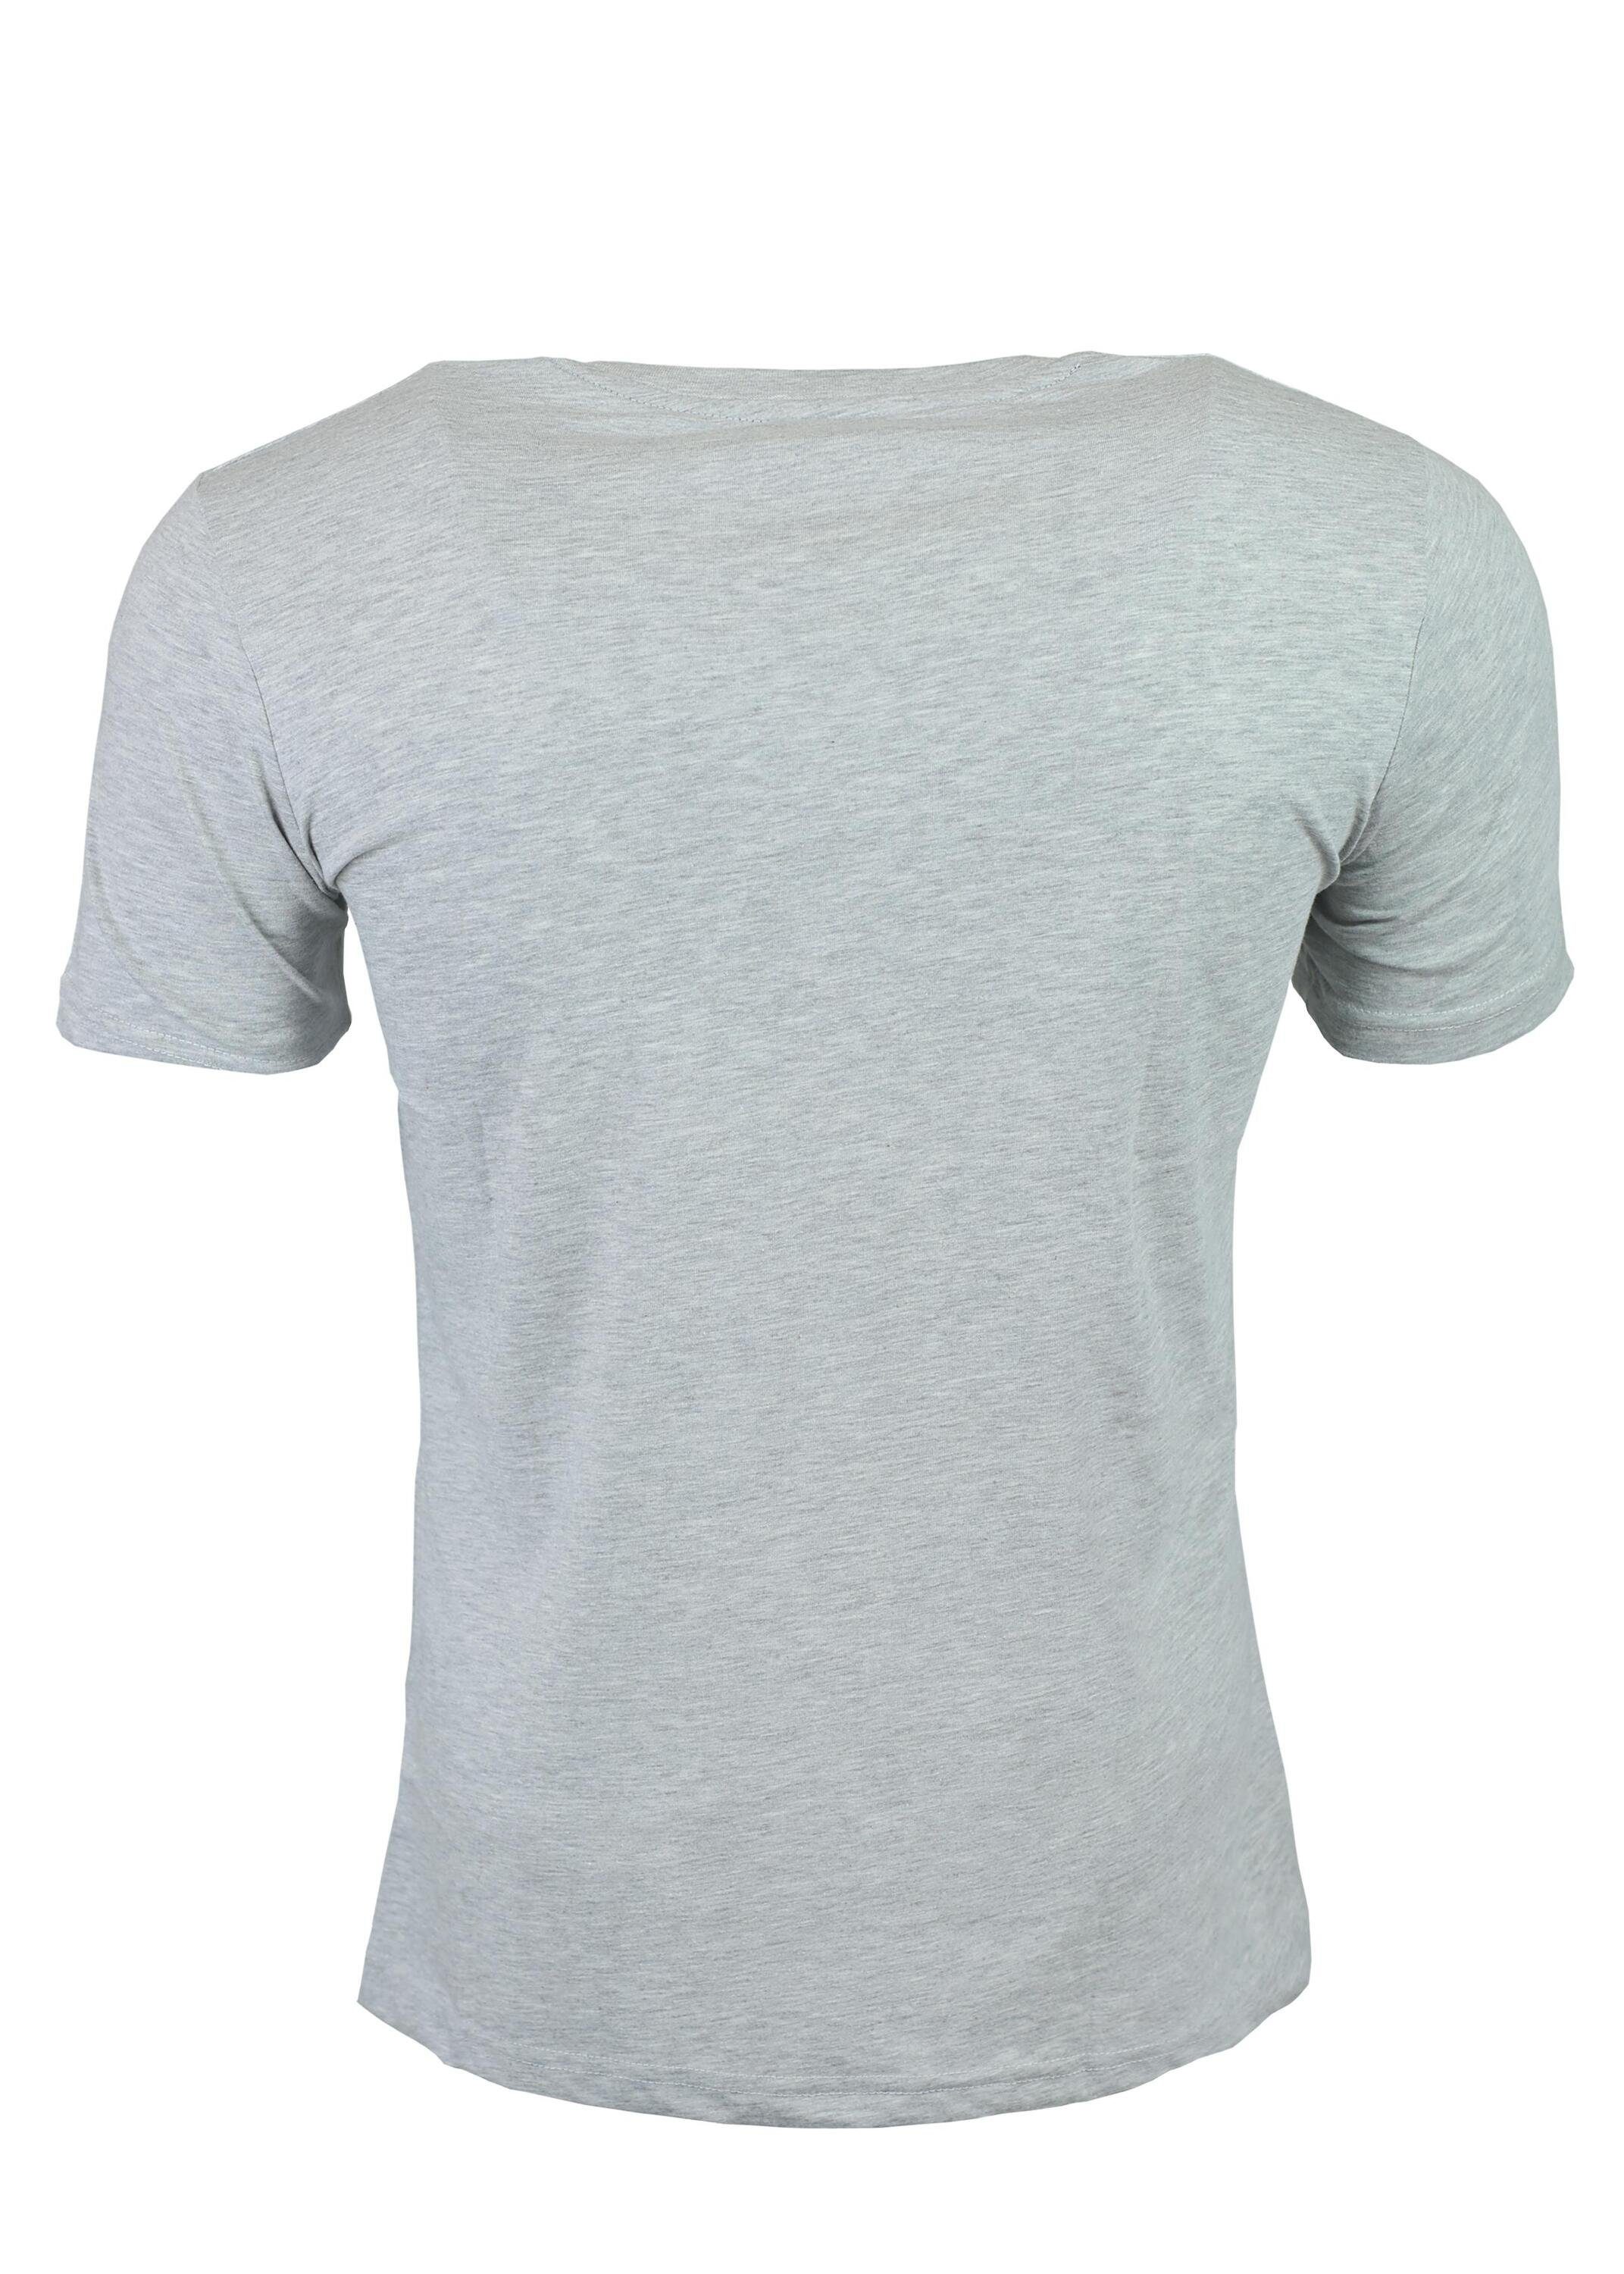 Baumwolle Sport T-Shirt Grey und Juri FuPer für Lifestyle Herren, aus für